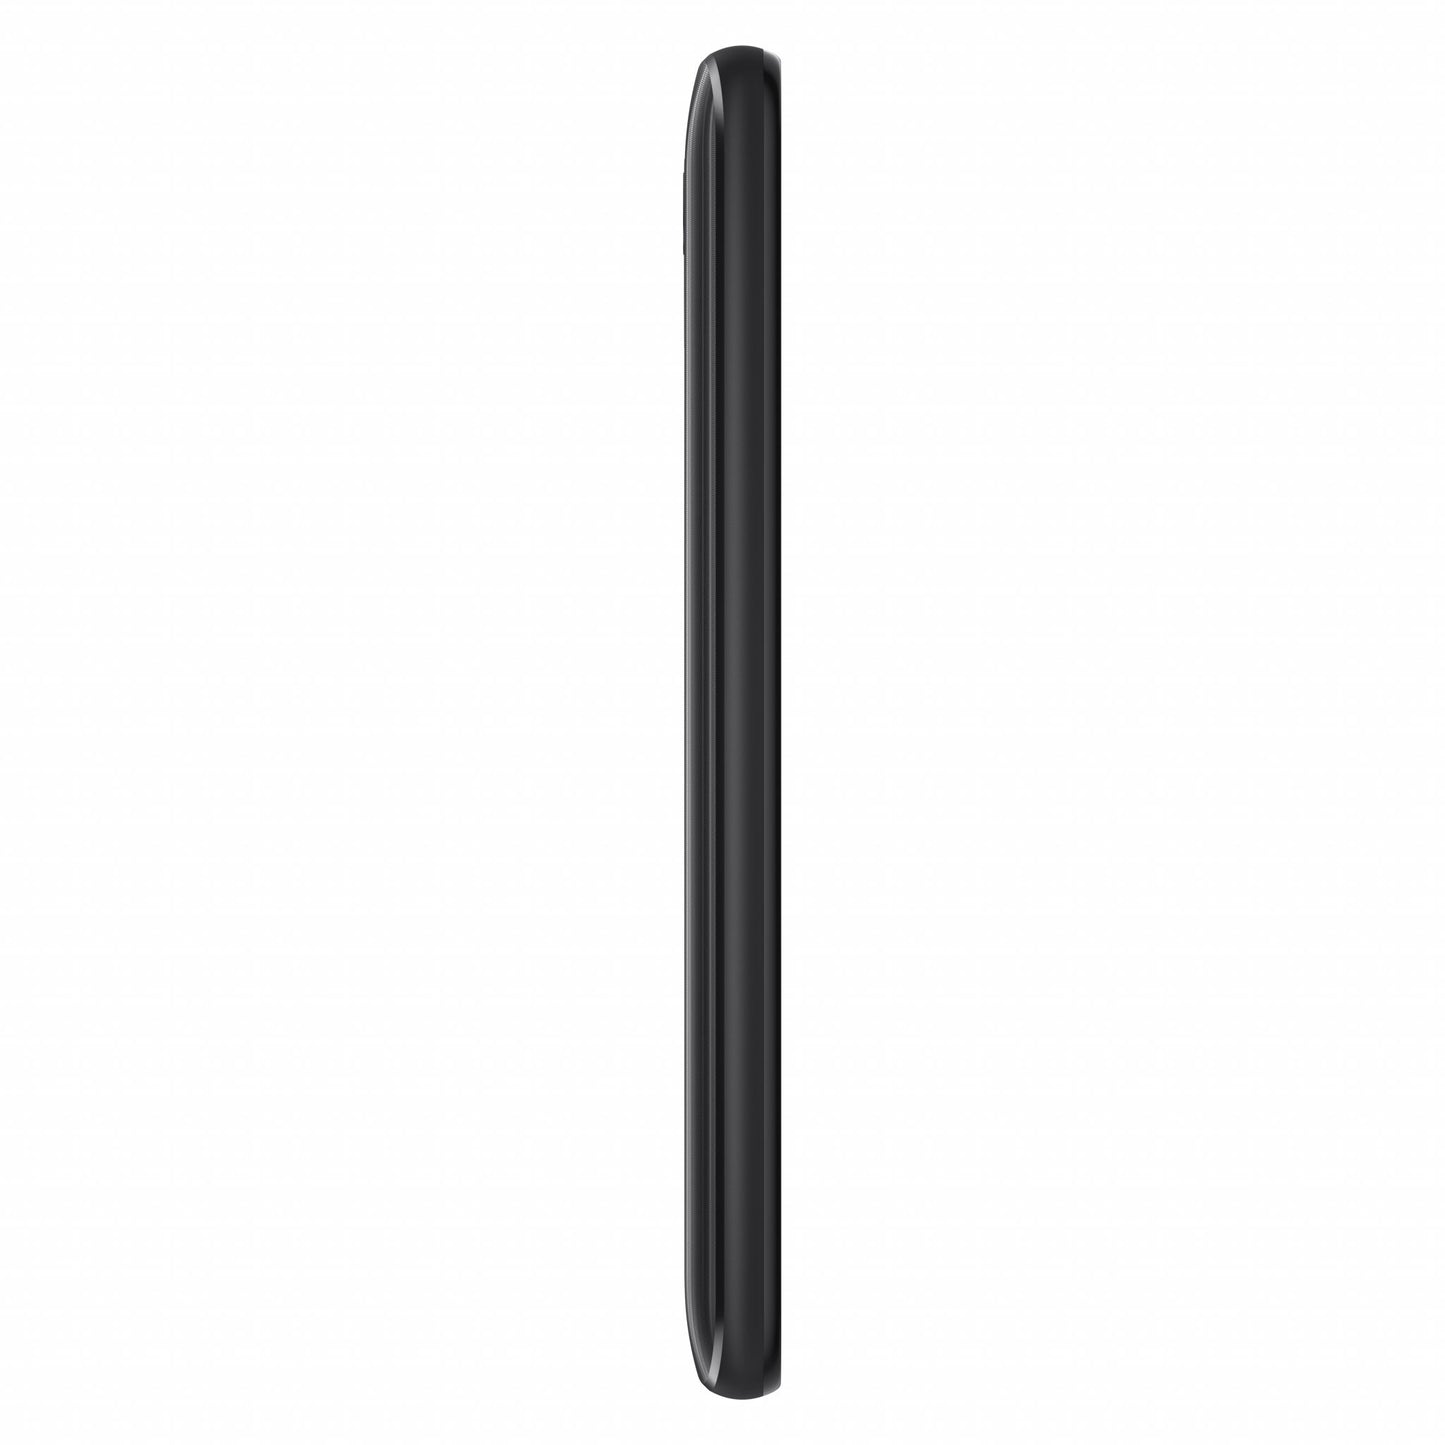 Alcatel 1 (2021) 1 2021 12.7 cm (5") Dual SIM Android 11 Go Edition 4G Micro-USB 1 GB 8 GB 2000 mAh Black